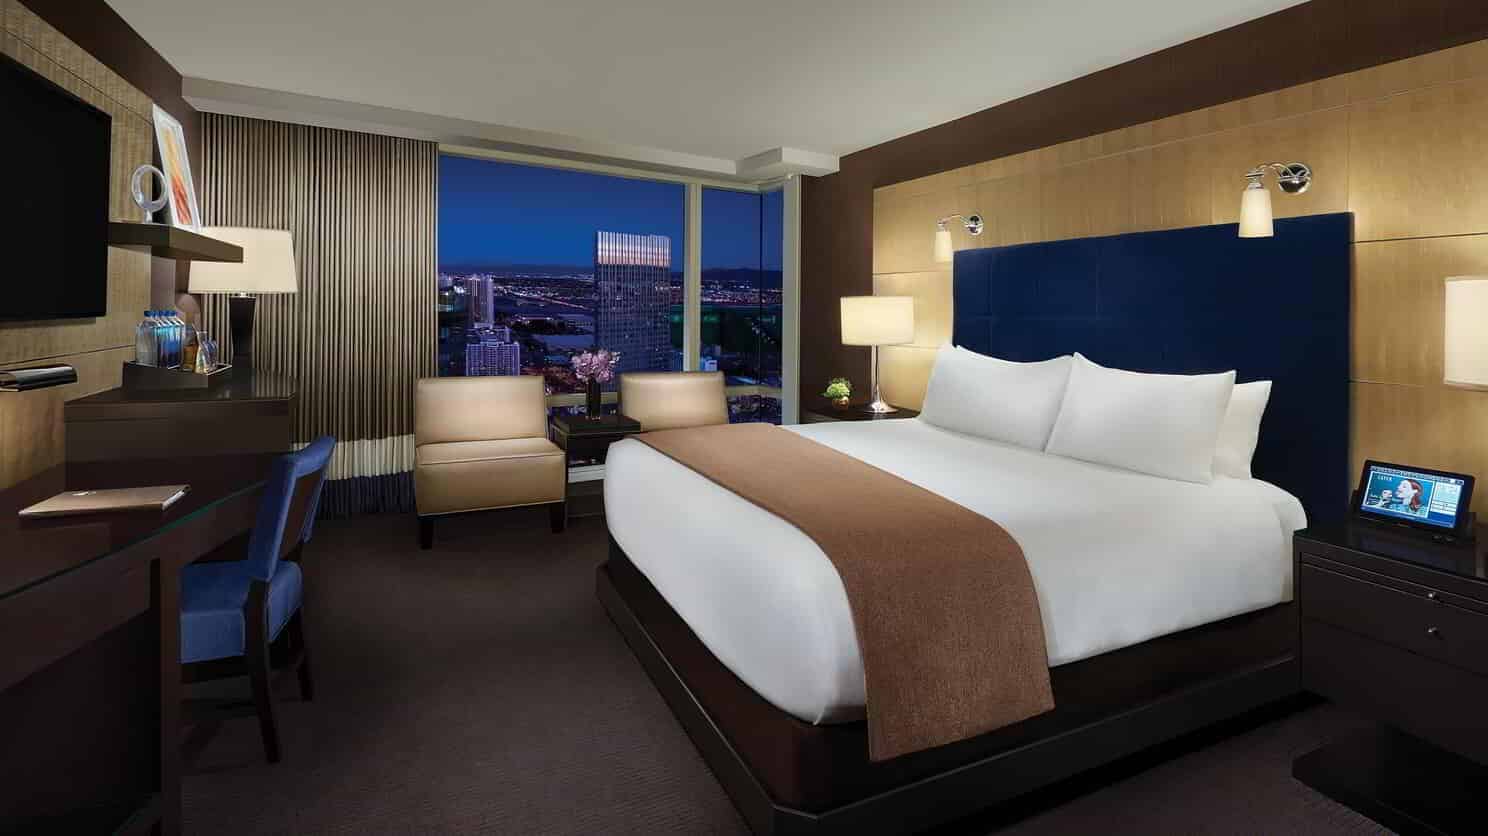 Habitaciones, restaurantes, espectáculos y piscina en el Aria Hotel Las Vegas